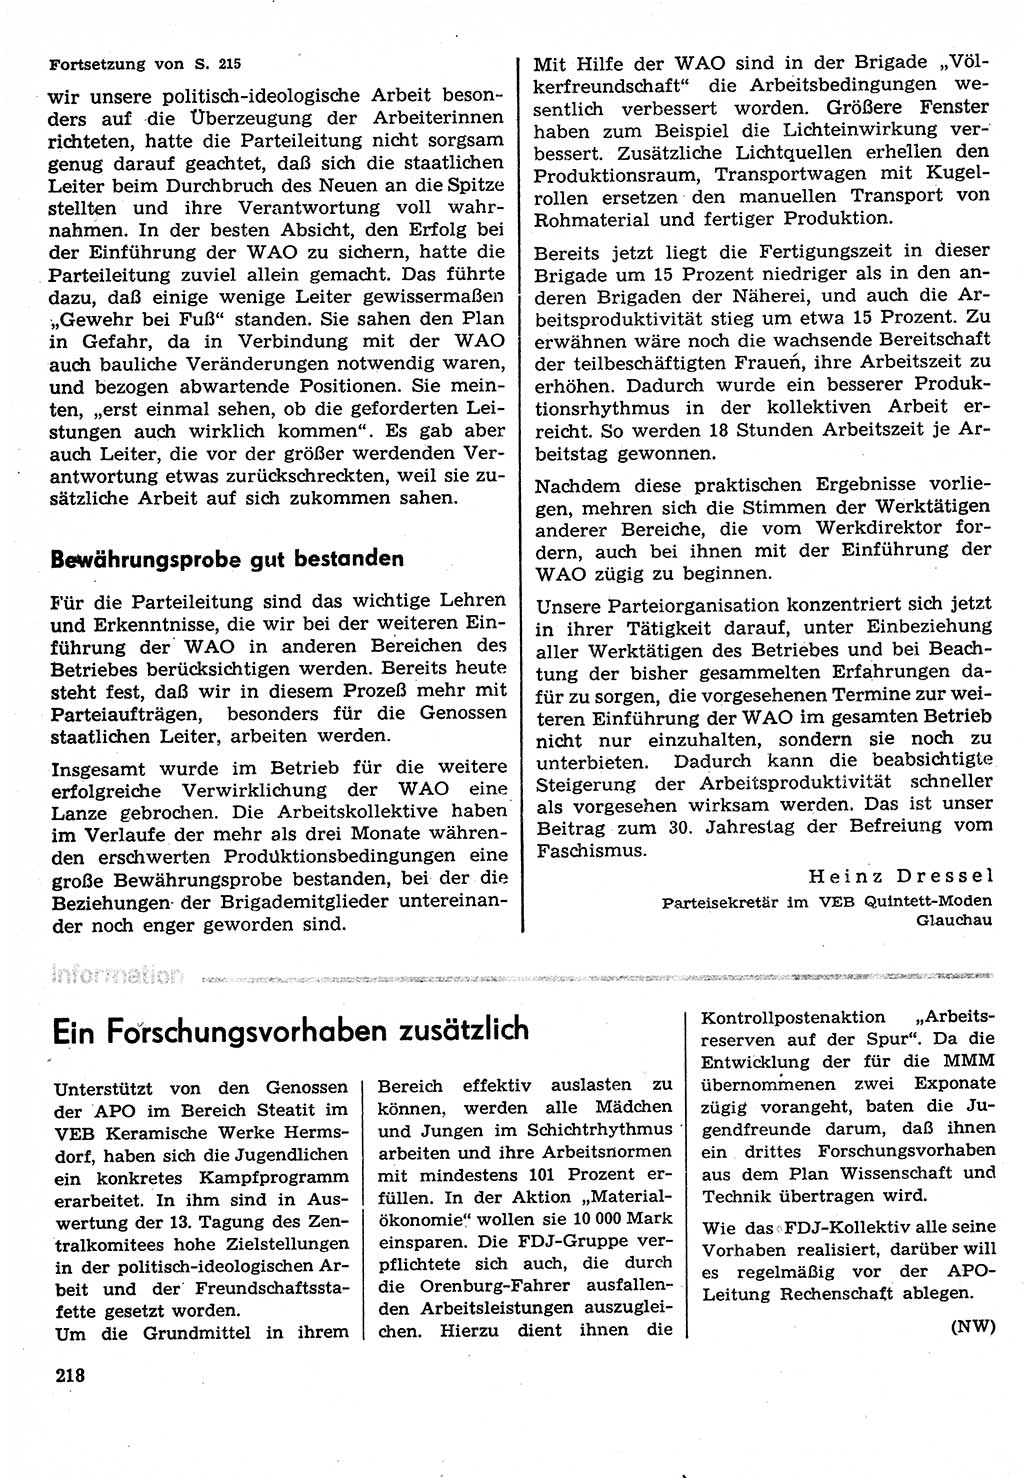 Neuer Weg (NW), Organ des Zentralkomitees (ZK) der SED (Sozialistische Einheitspartei Deutschlands) für Fragen des Parteilebens, 30. Jahrgang [Deutsche Demokratische Republik (DDR)] 1975, Seite 218 (NW ZK SED DDR 1975, S. 218)